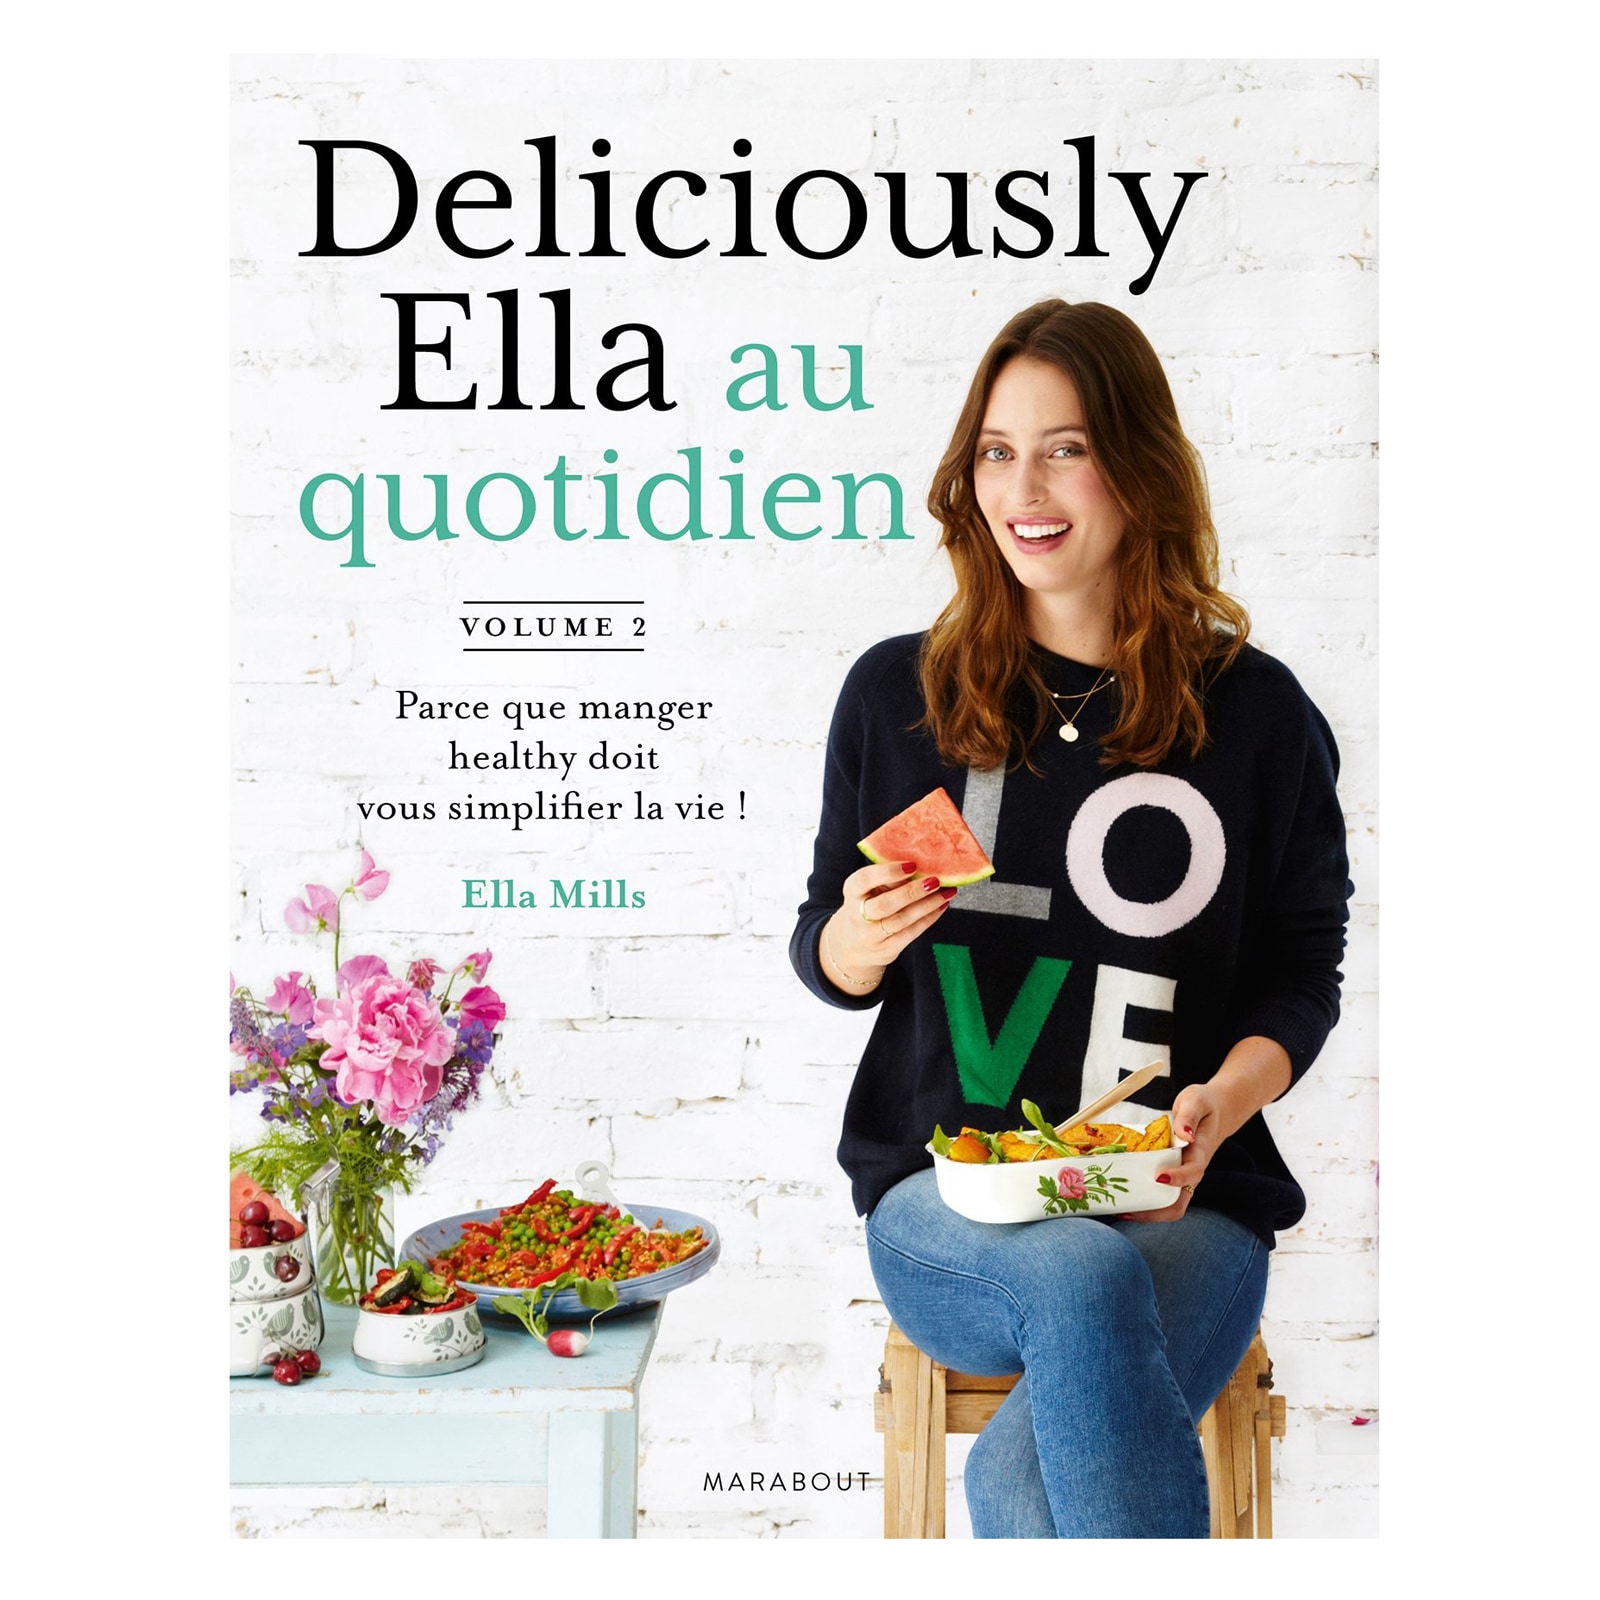 Deliciously Ella au quotidien - Volume 2